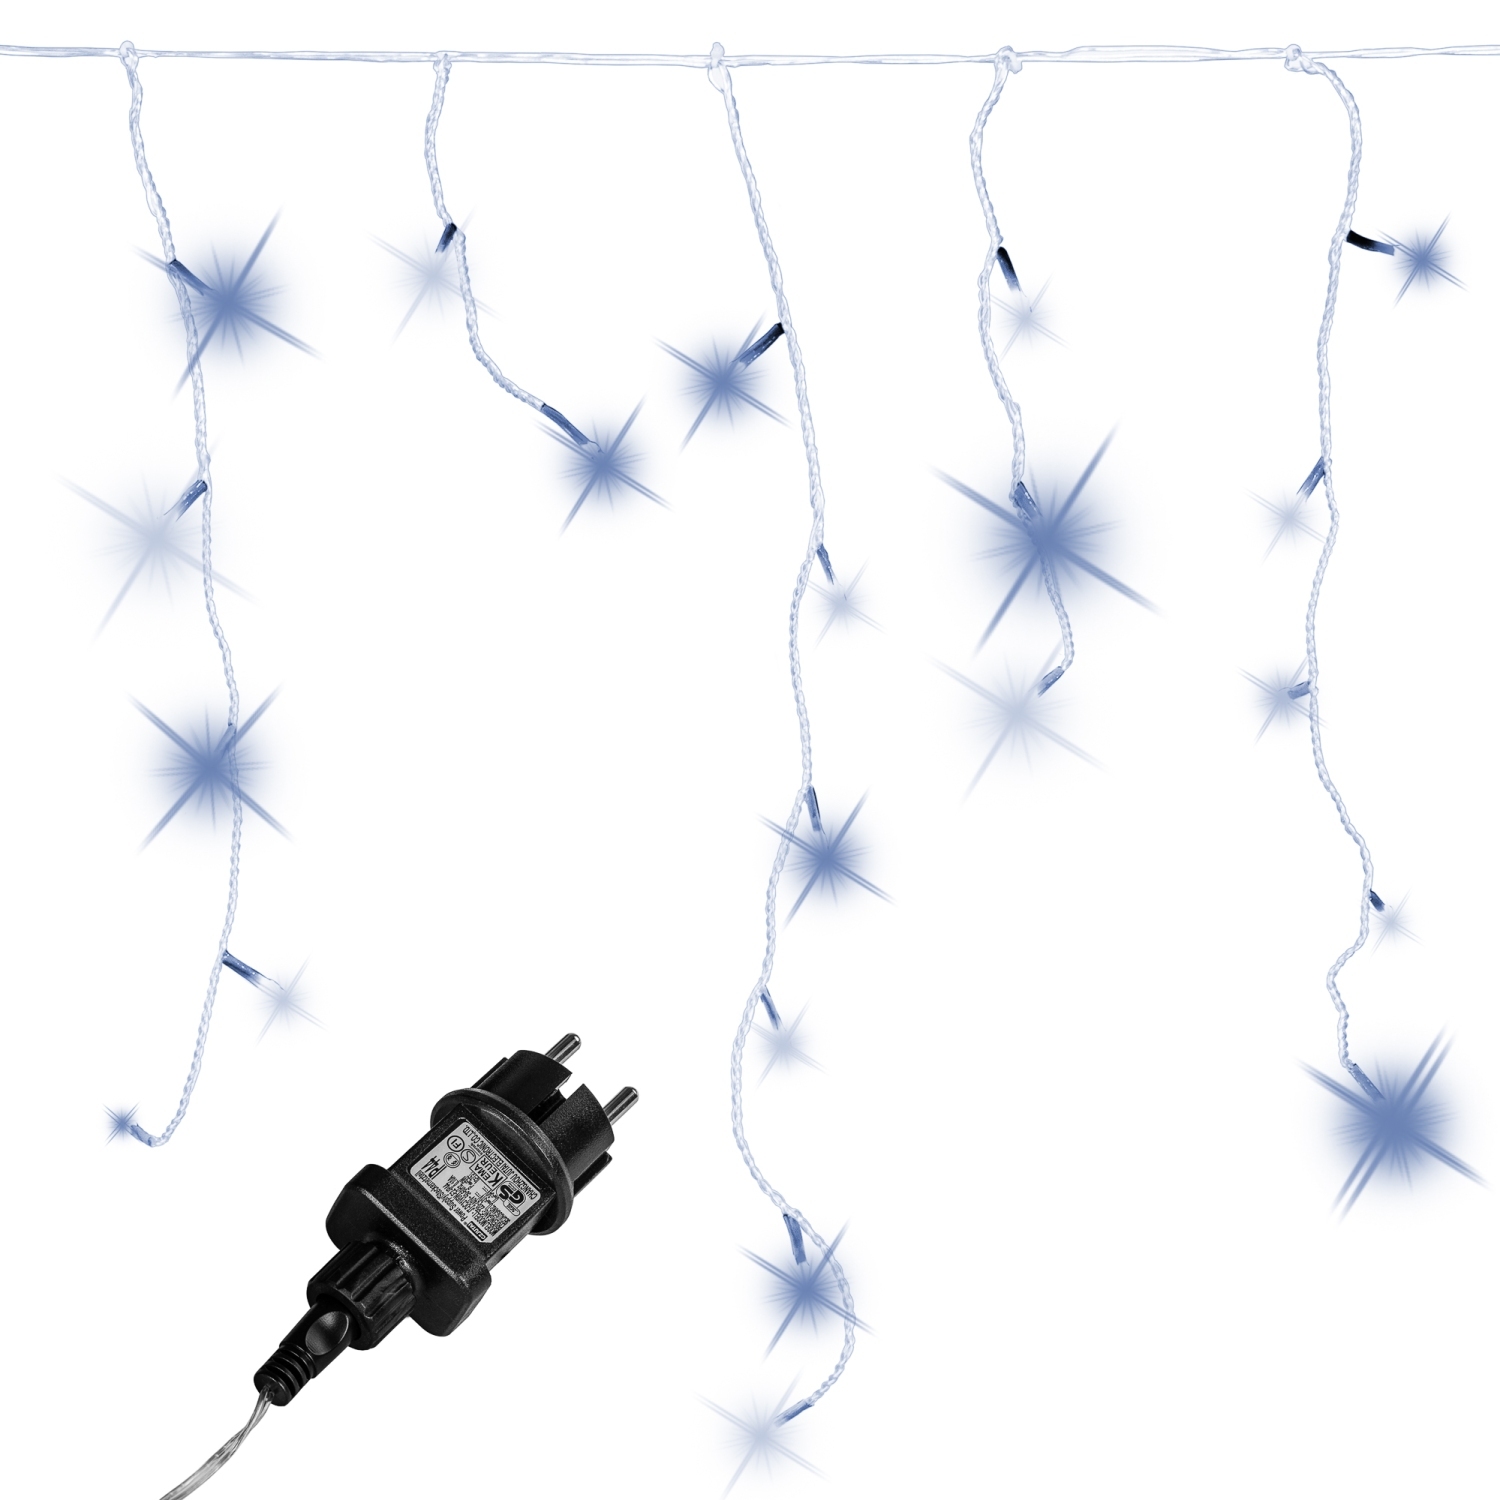 Lichtgordijn – Ijspegelverlichting – Voor Binnen en Buiten – Met afstandsbediening – 5 m – Koud wit